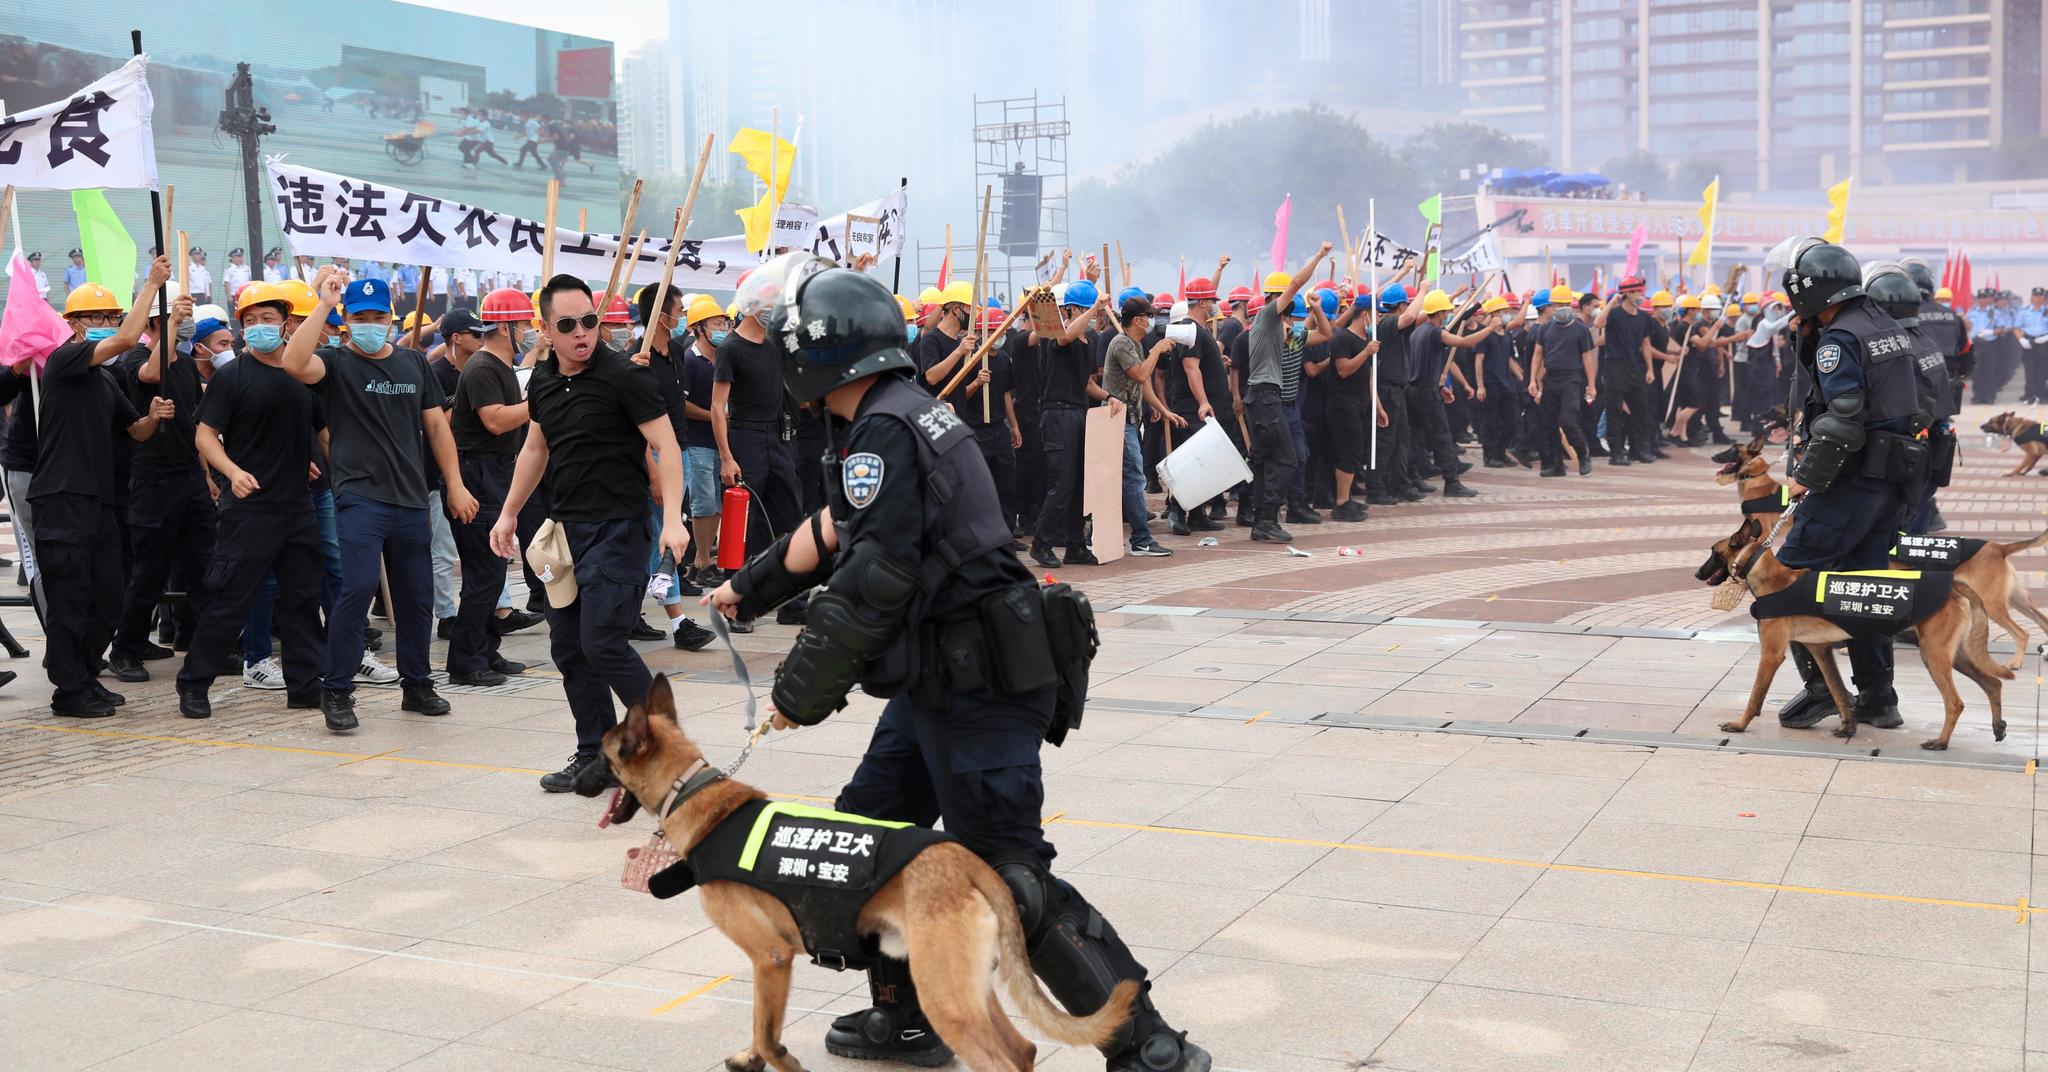 Politi i Shenzen, nær Hongkong, øver på å slå tilbake demonstranter. Bildene fra politiøvelsene kommer samtidig som det er store demonstrasjoner i Hongkong. 